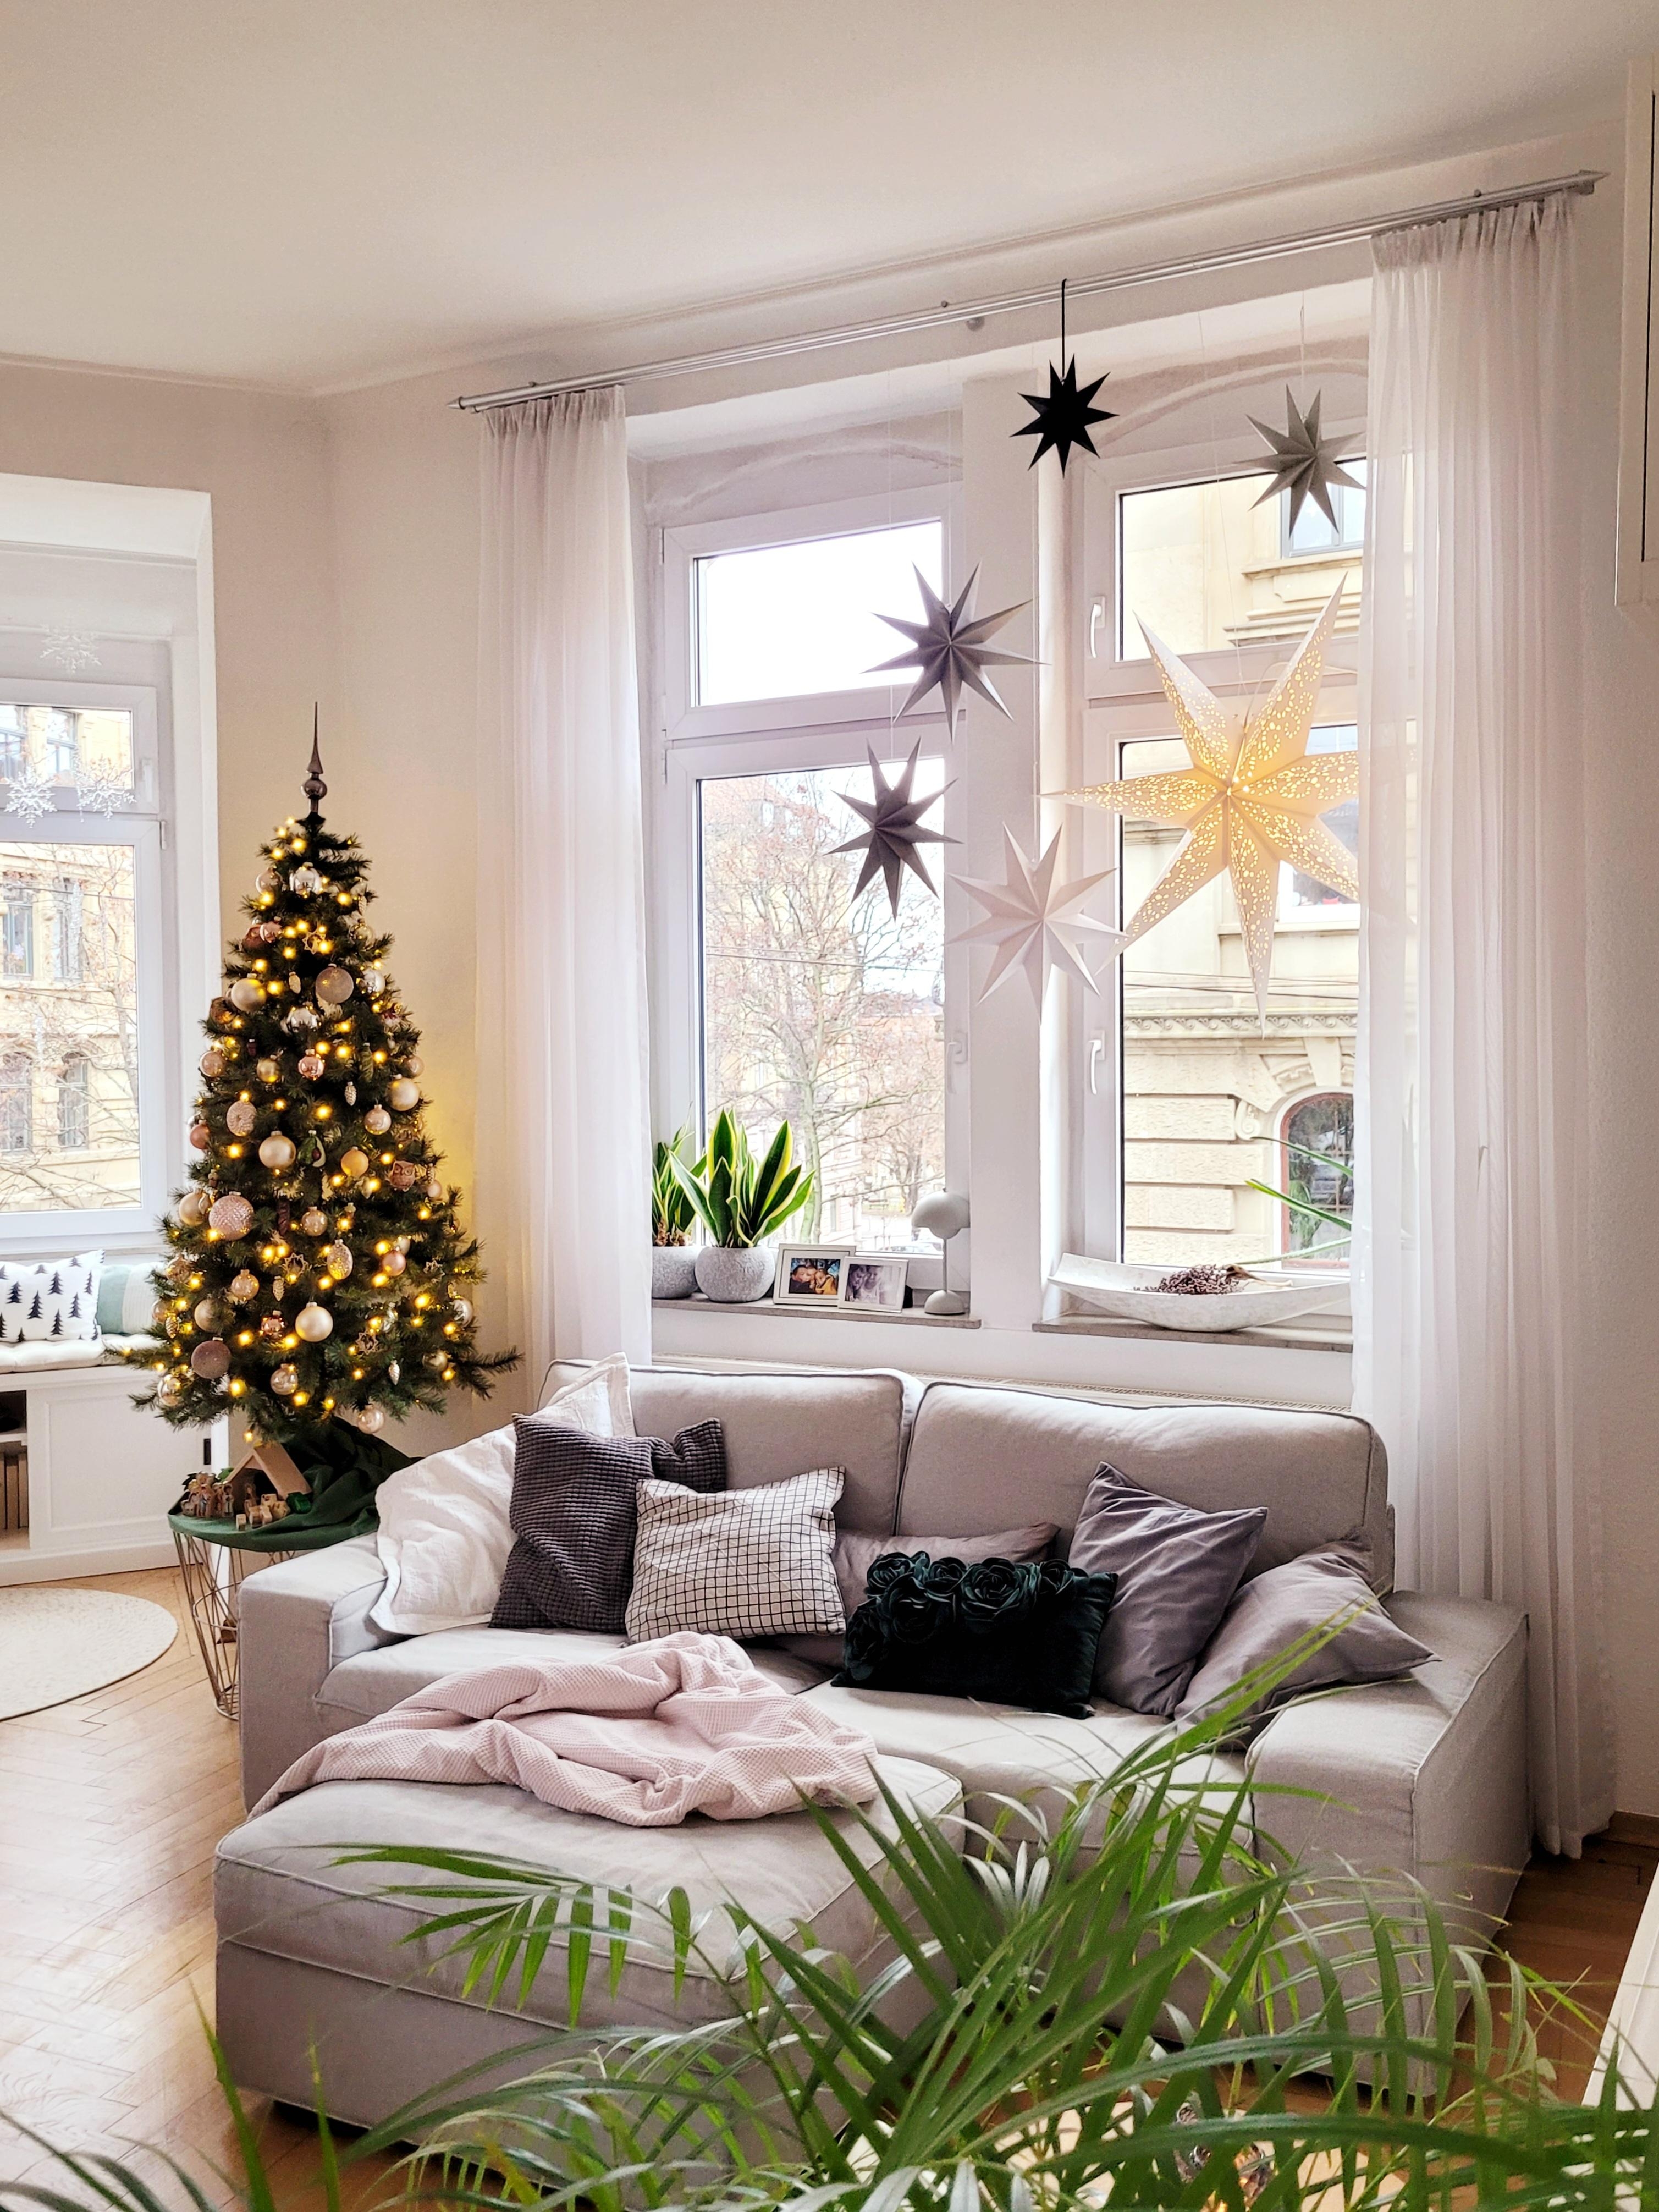 Heute geht es ans Geschenke verpacken!
#Wohnzimmer #altbau #Tannenbaum #Weihnachtsdeko #Weihnachtszeit #dekoration #xmas #fensterbank 